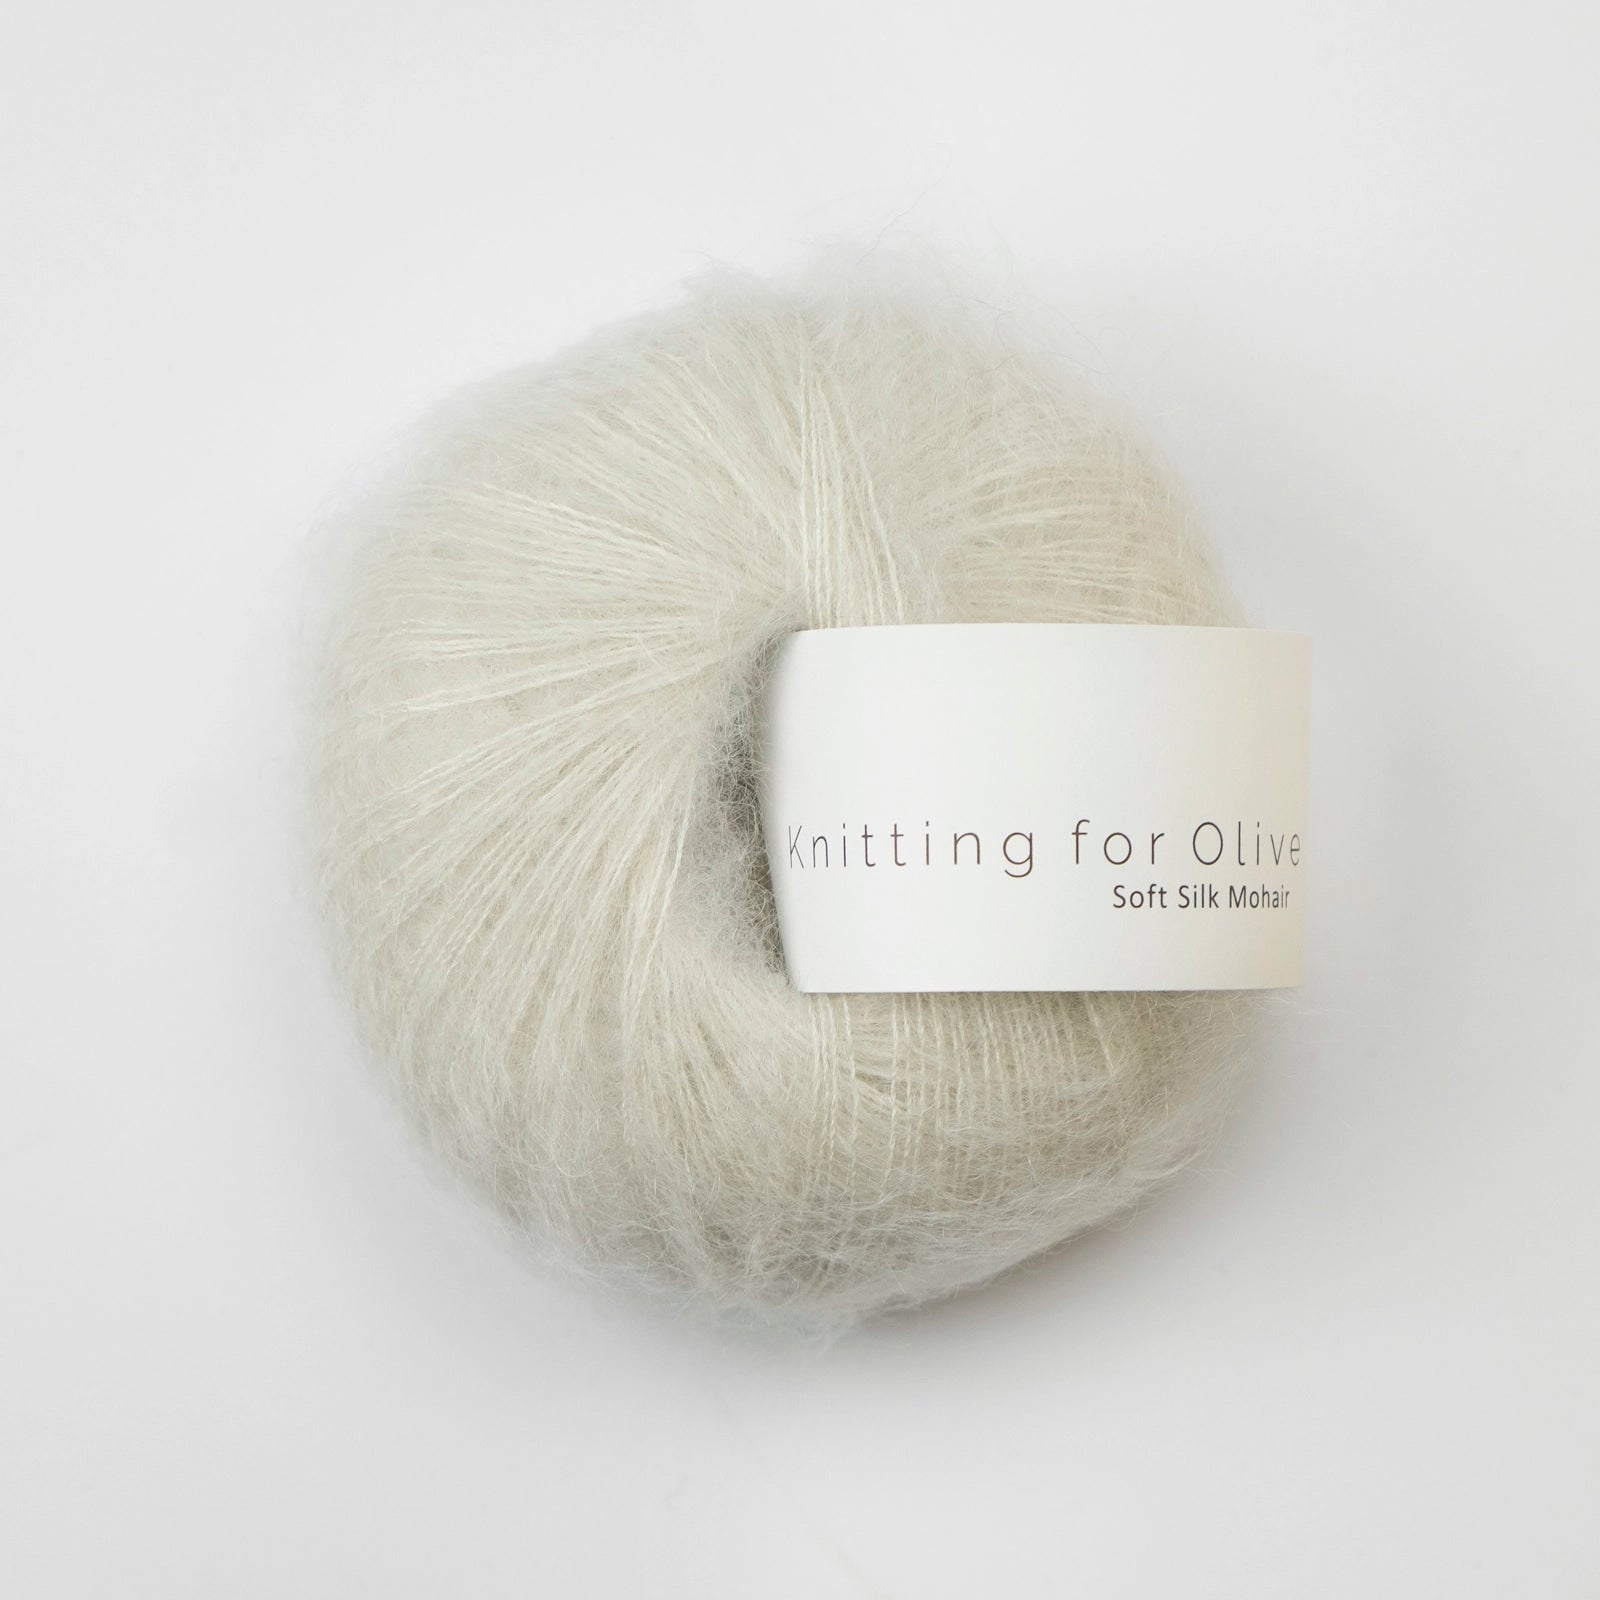 Soft Silk Mohair von KNITTING FOR OLIVE jetzt online kaufen bei OONIQUE